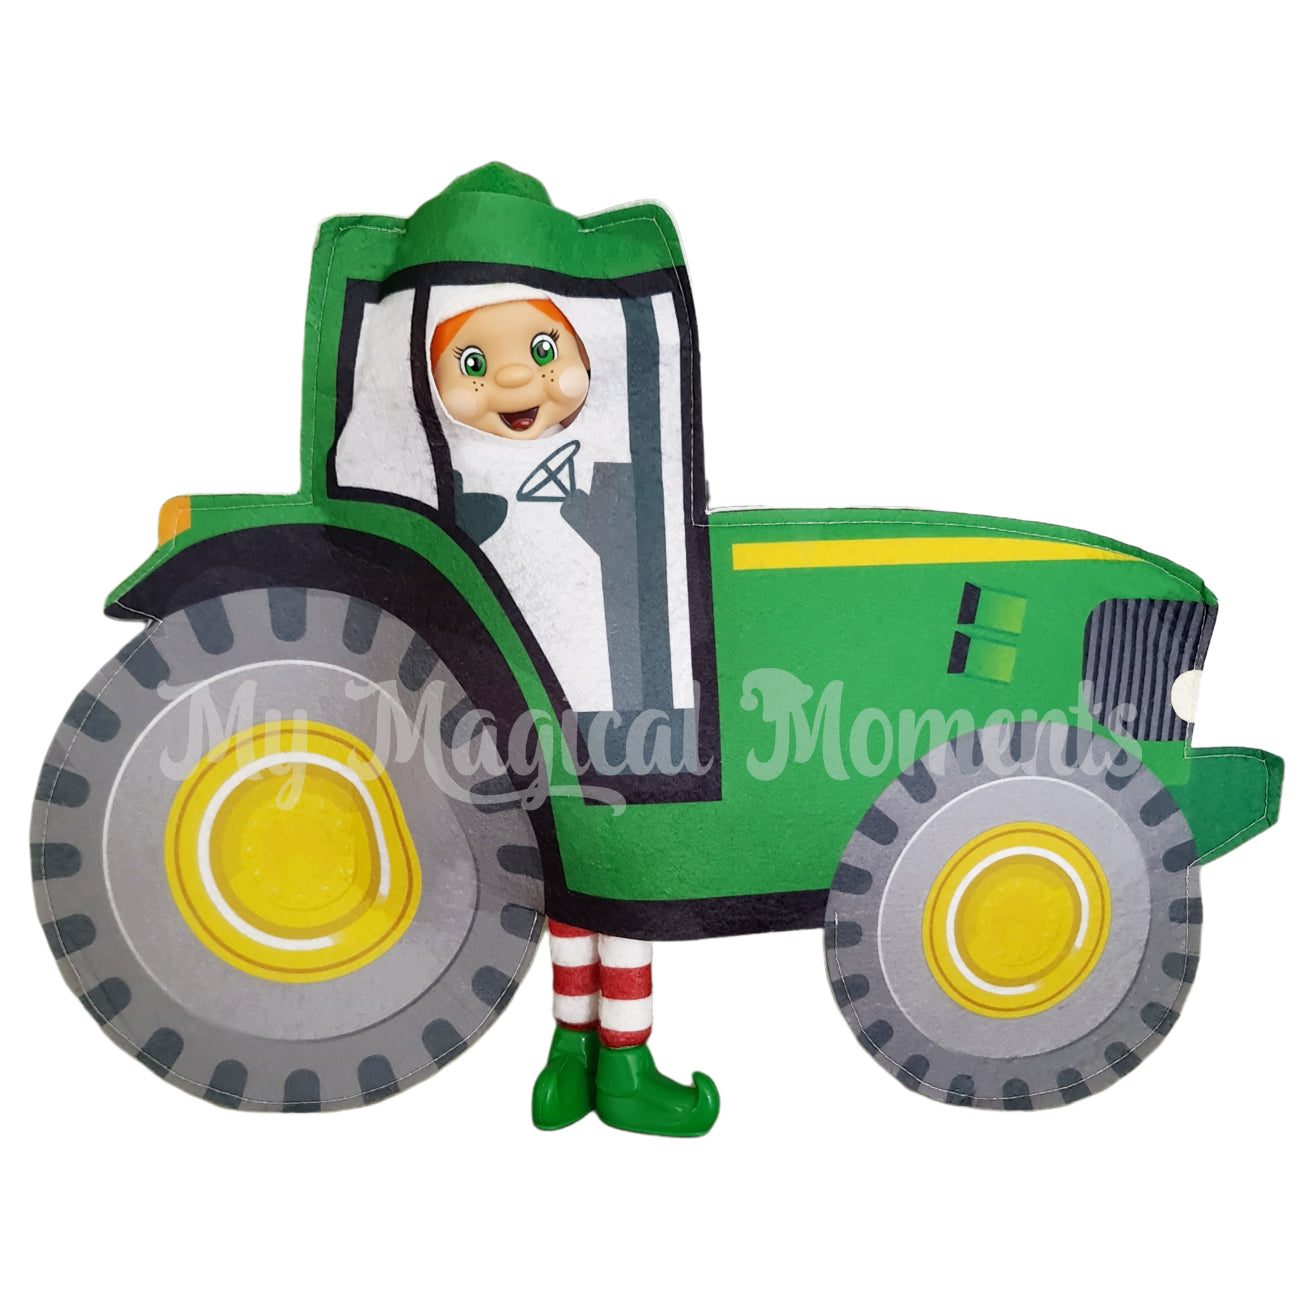 Tractor elf costume